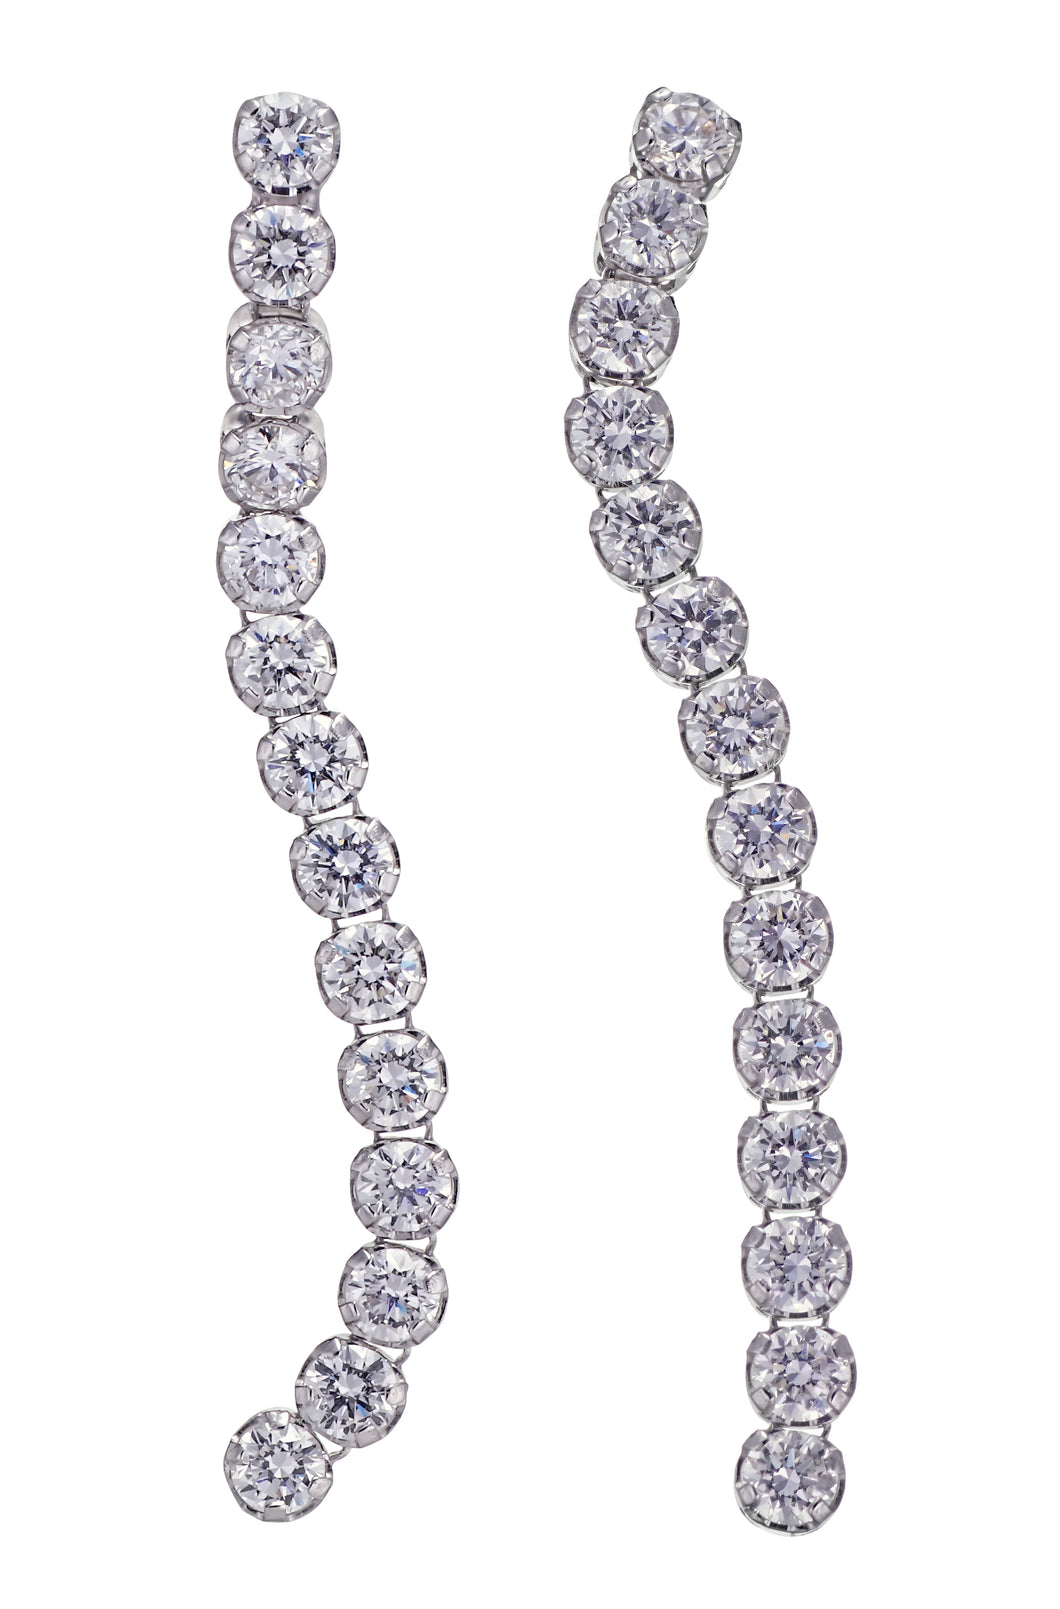 Diamond Earring Hanger